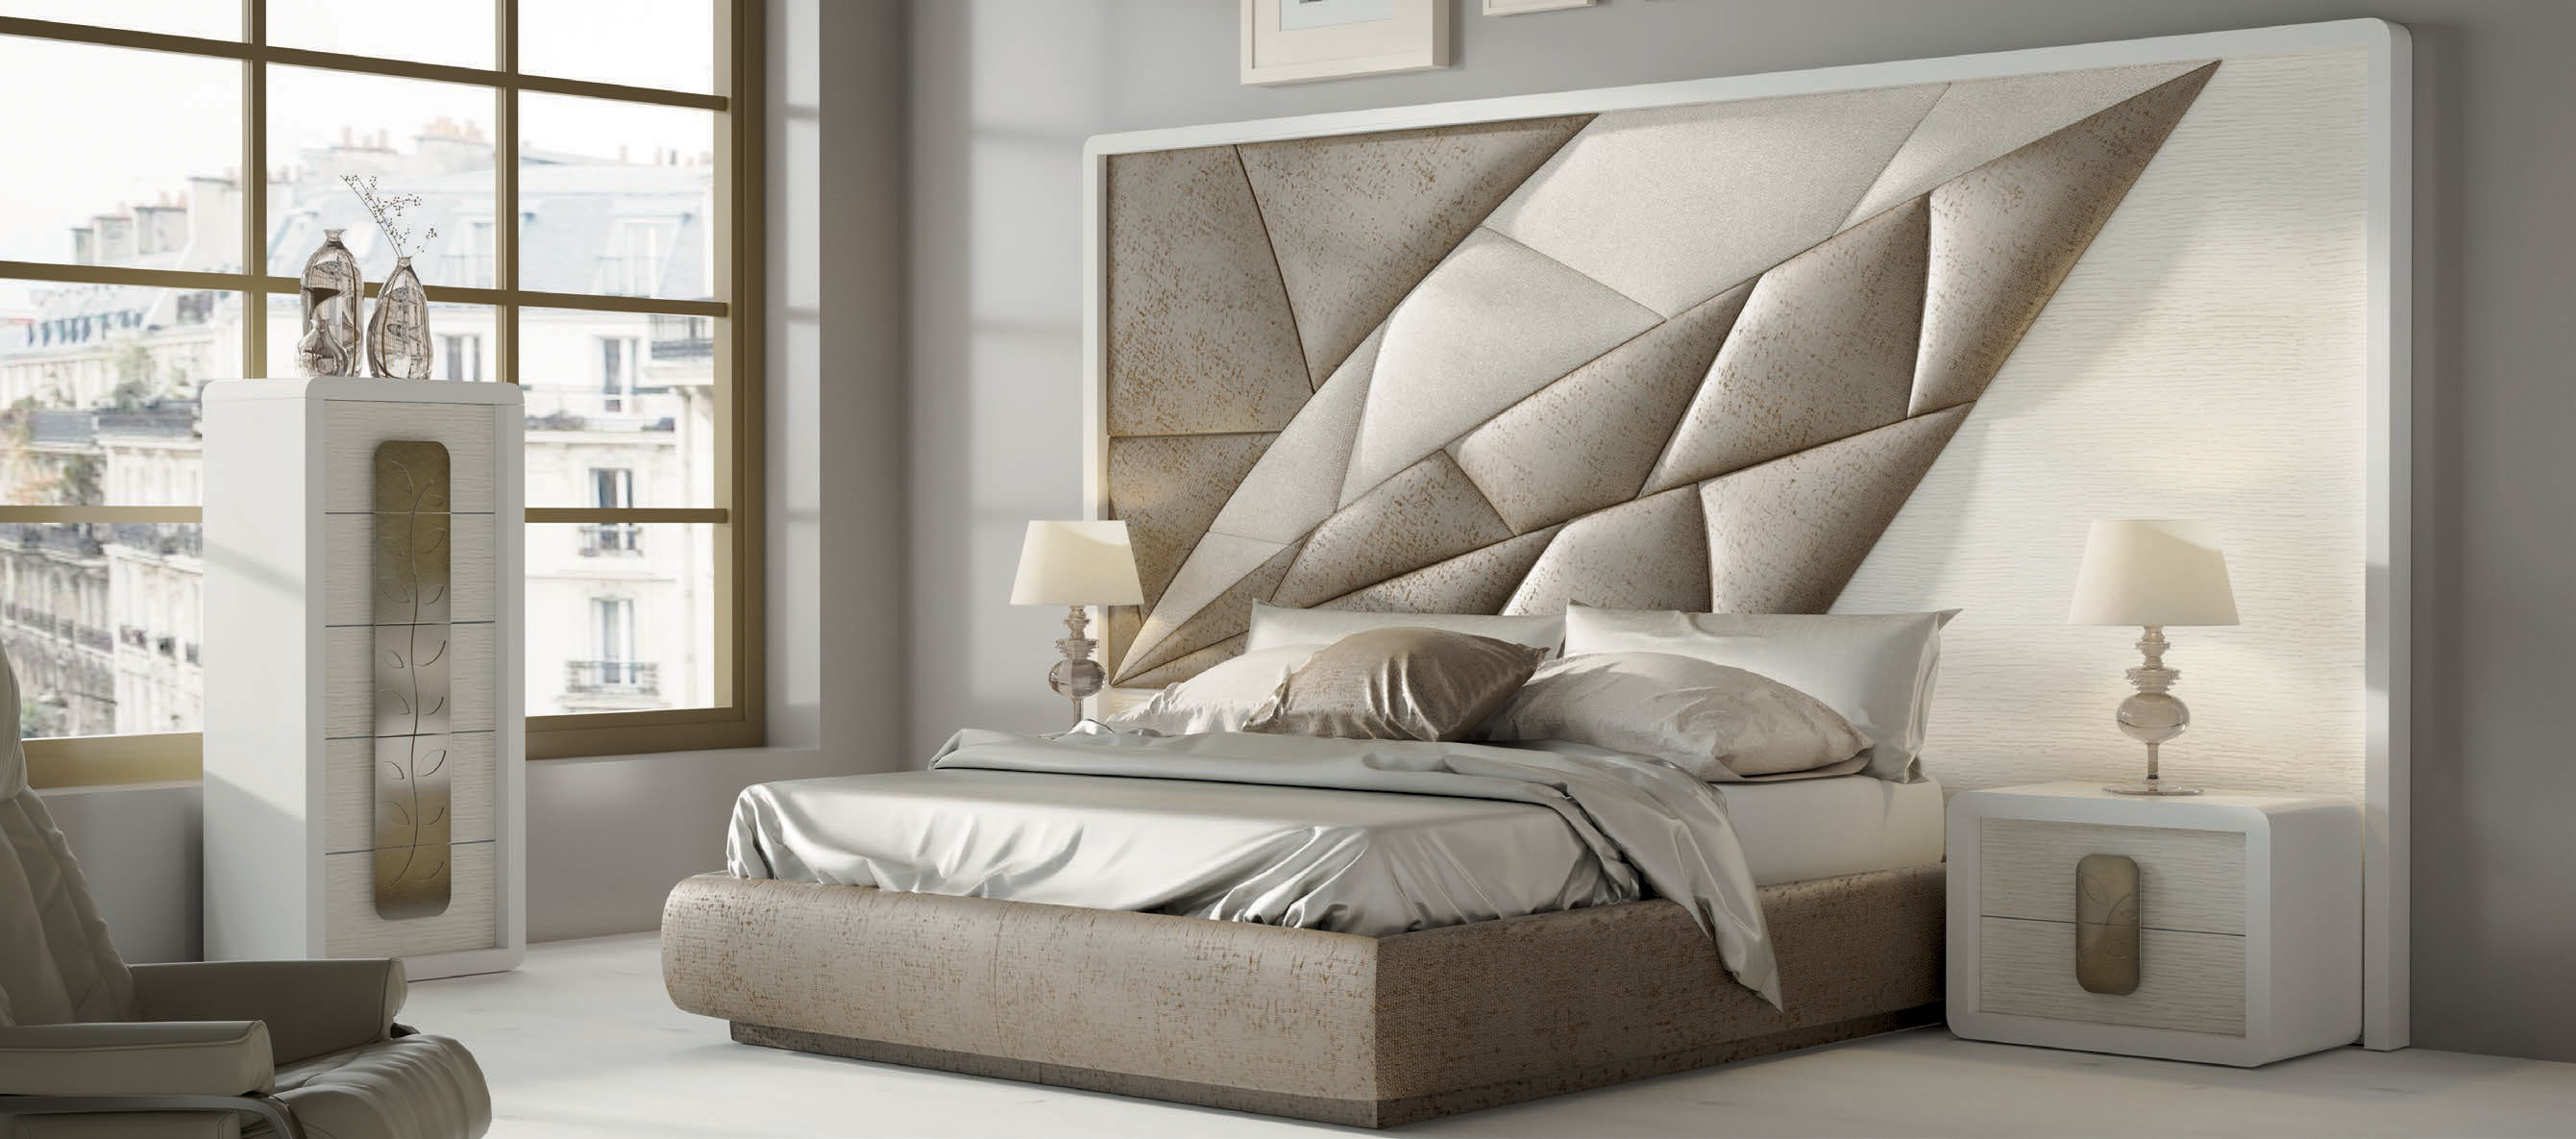 Brands Franco Furniture Avanty Bedrooms, Spain DOR 166